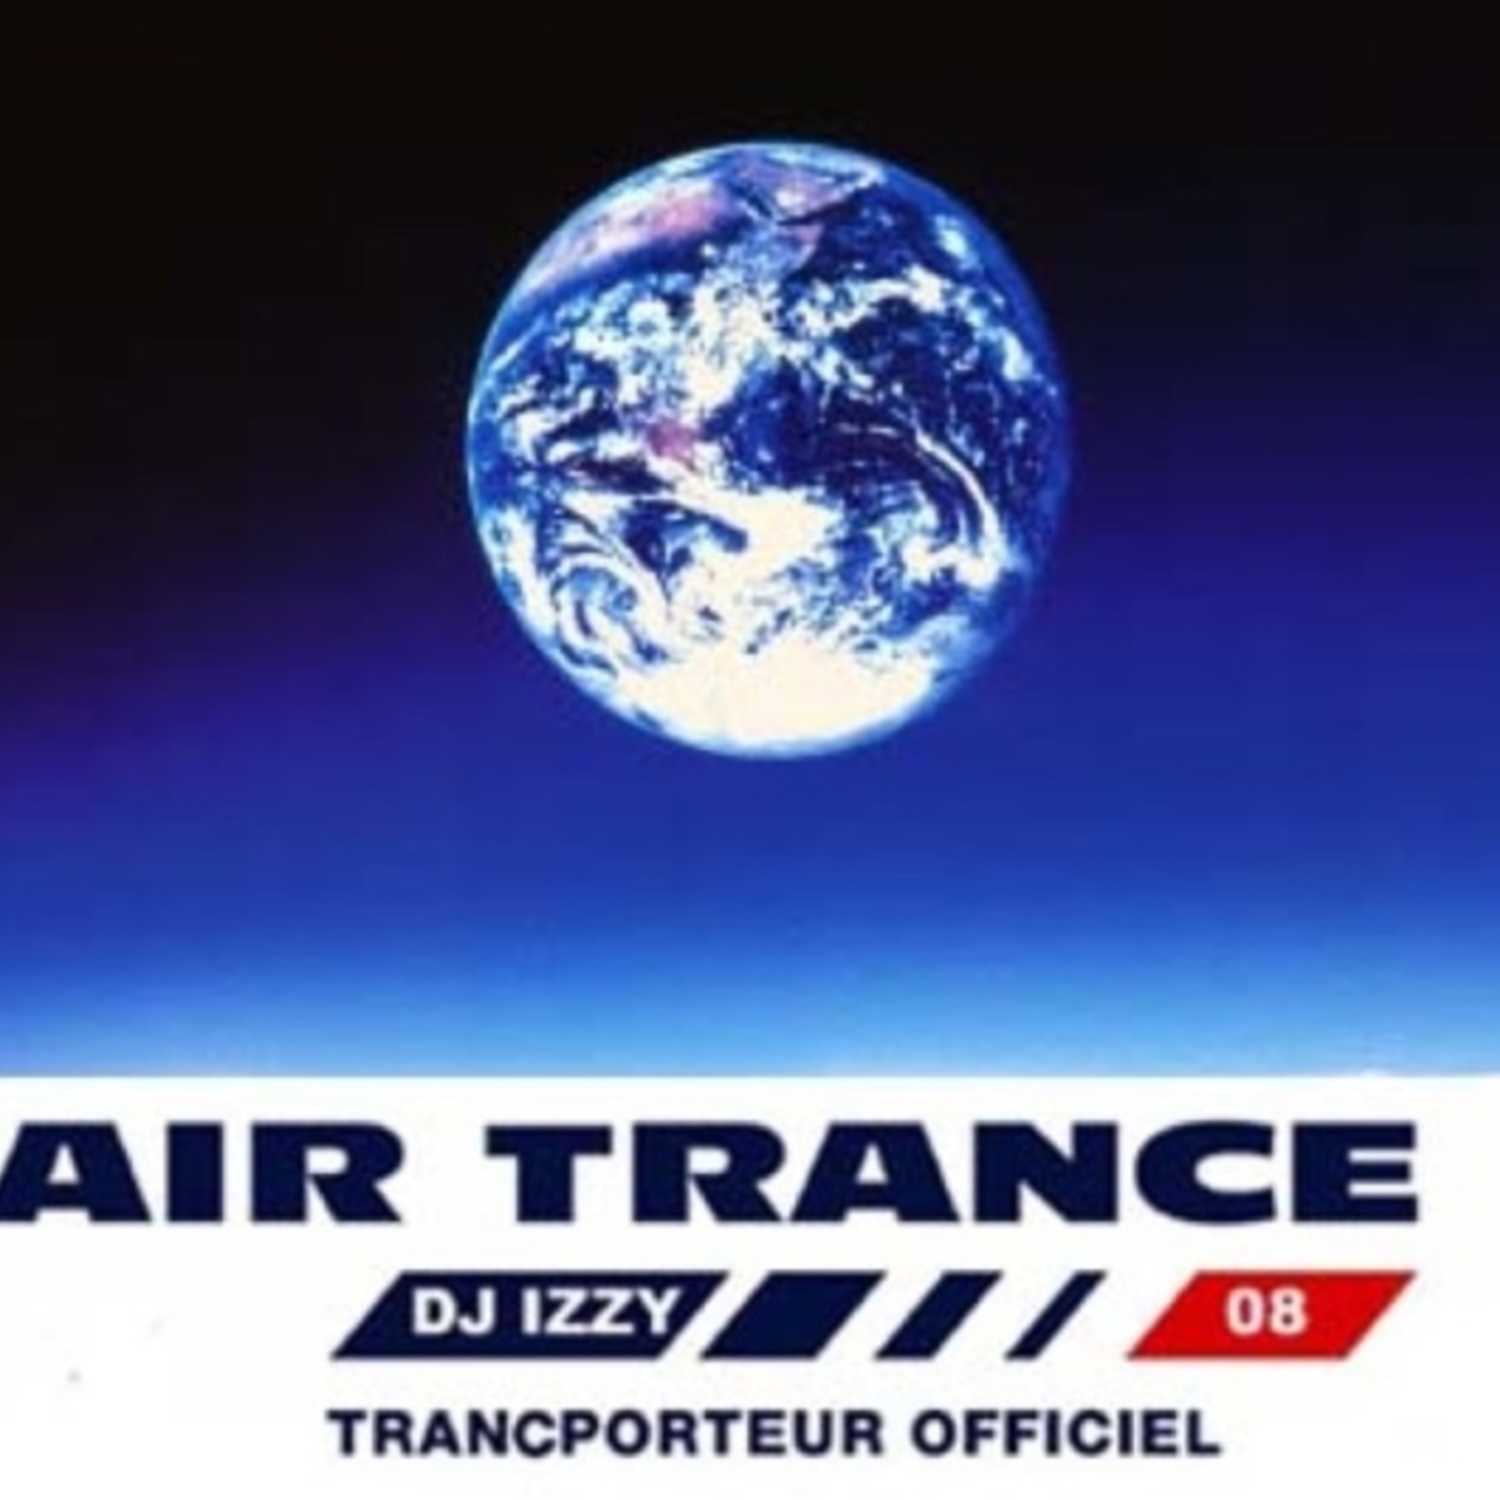 Air Trance